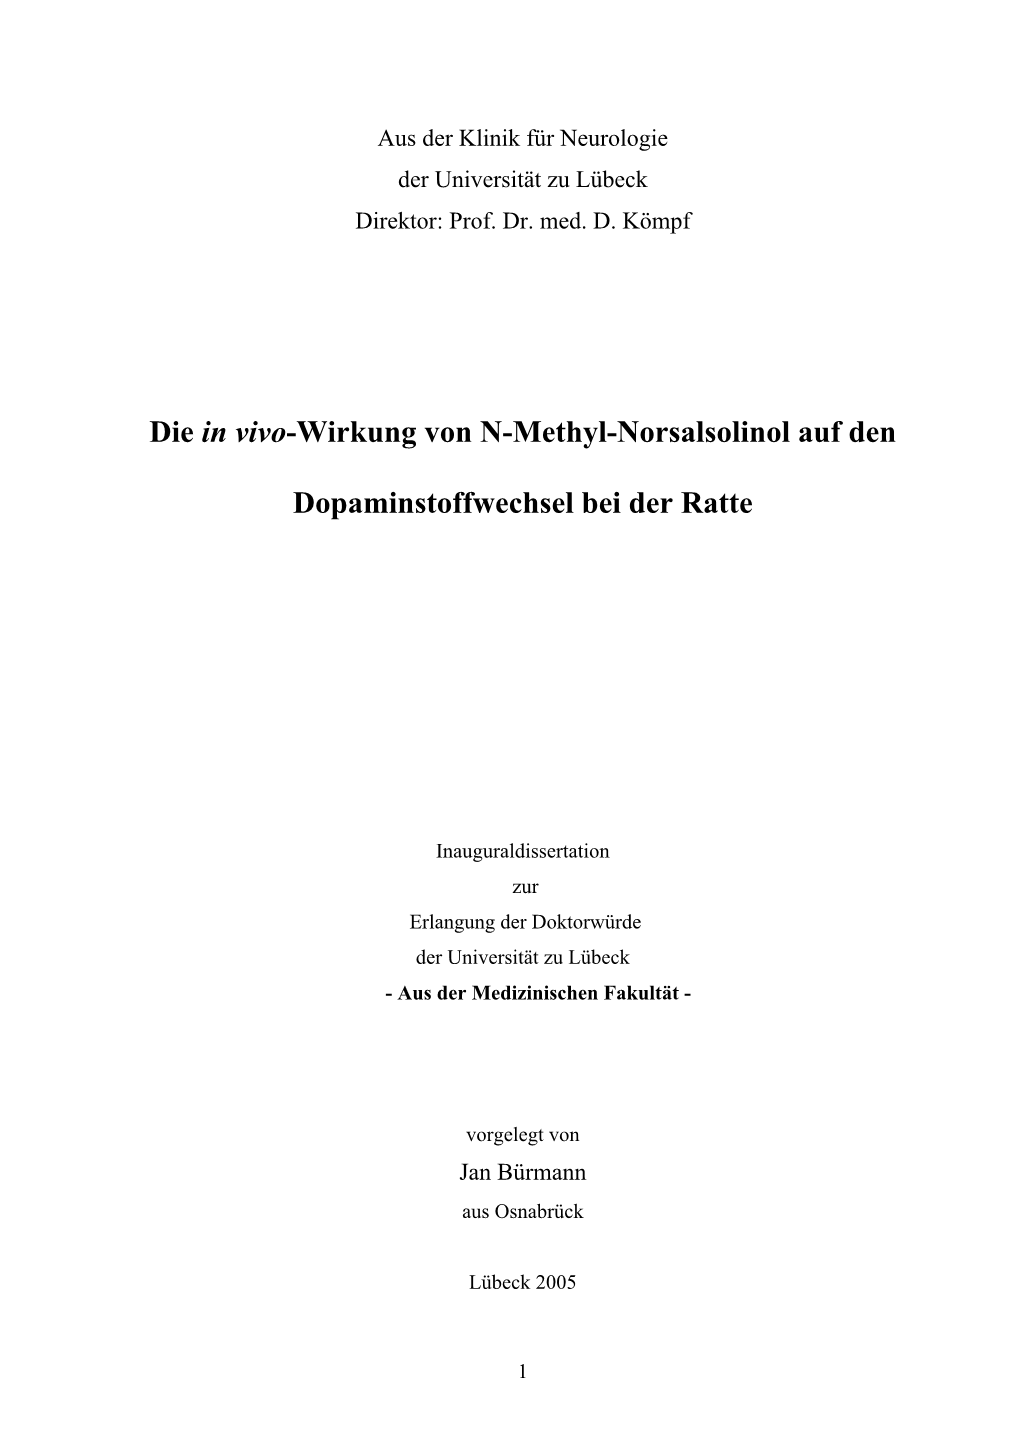 Die in Vivo-Wirkung Von N-Methyl-Norsalsolinol Auf Den